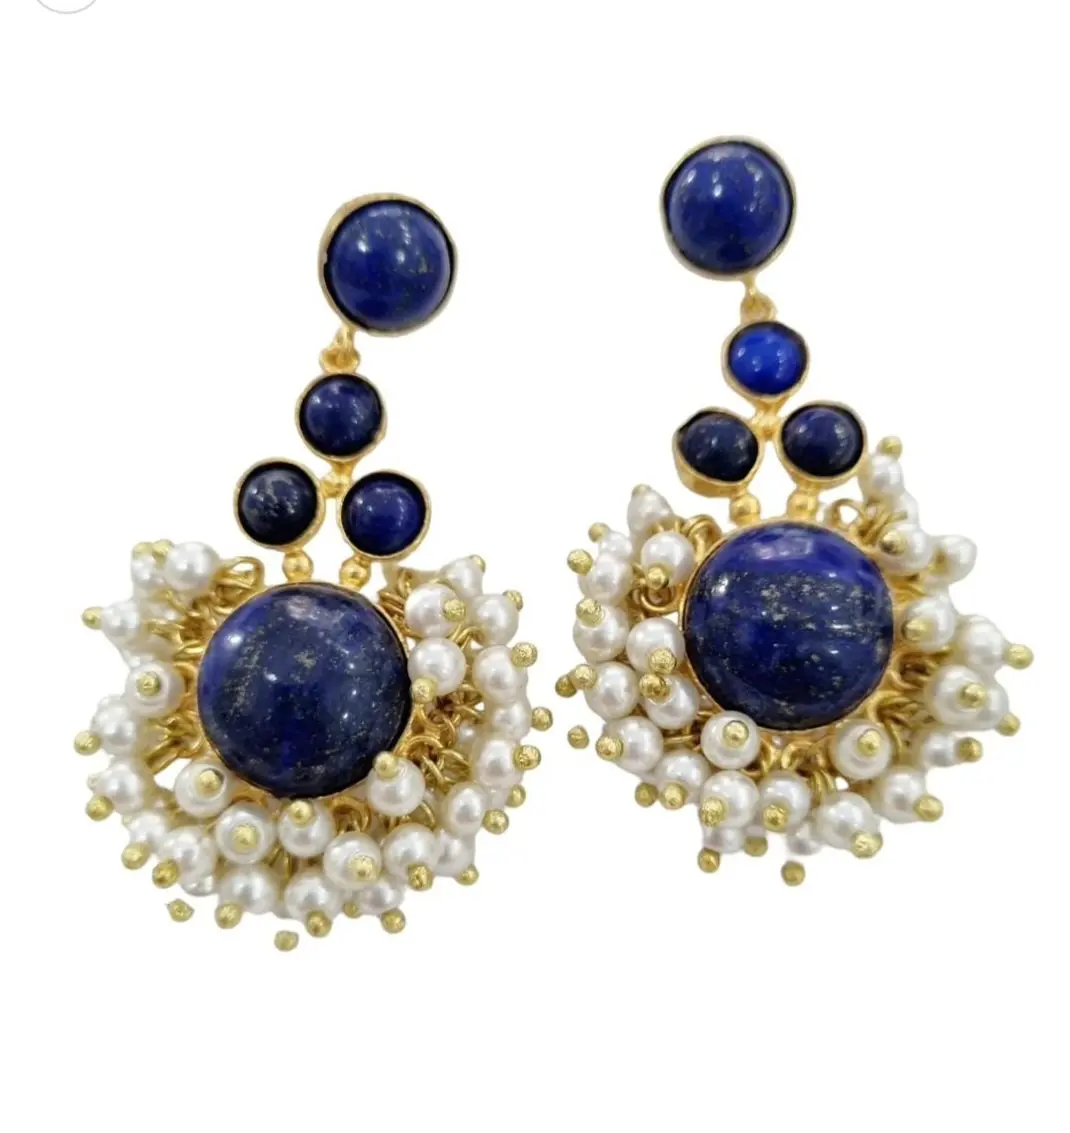 Boucles d'oreilles en lapis lazuli et perles de Majorque avec laiton, longueur 6 cm, poids 17,6gr